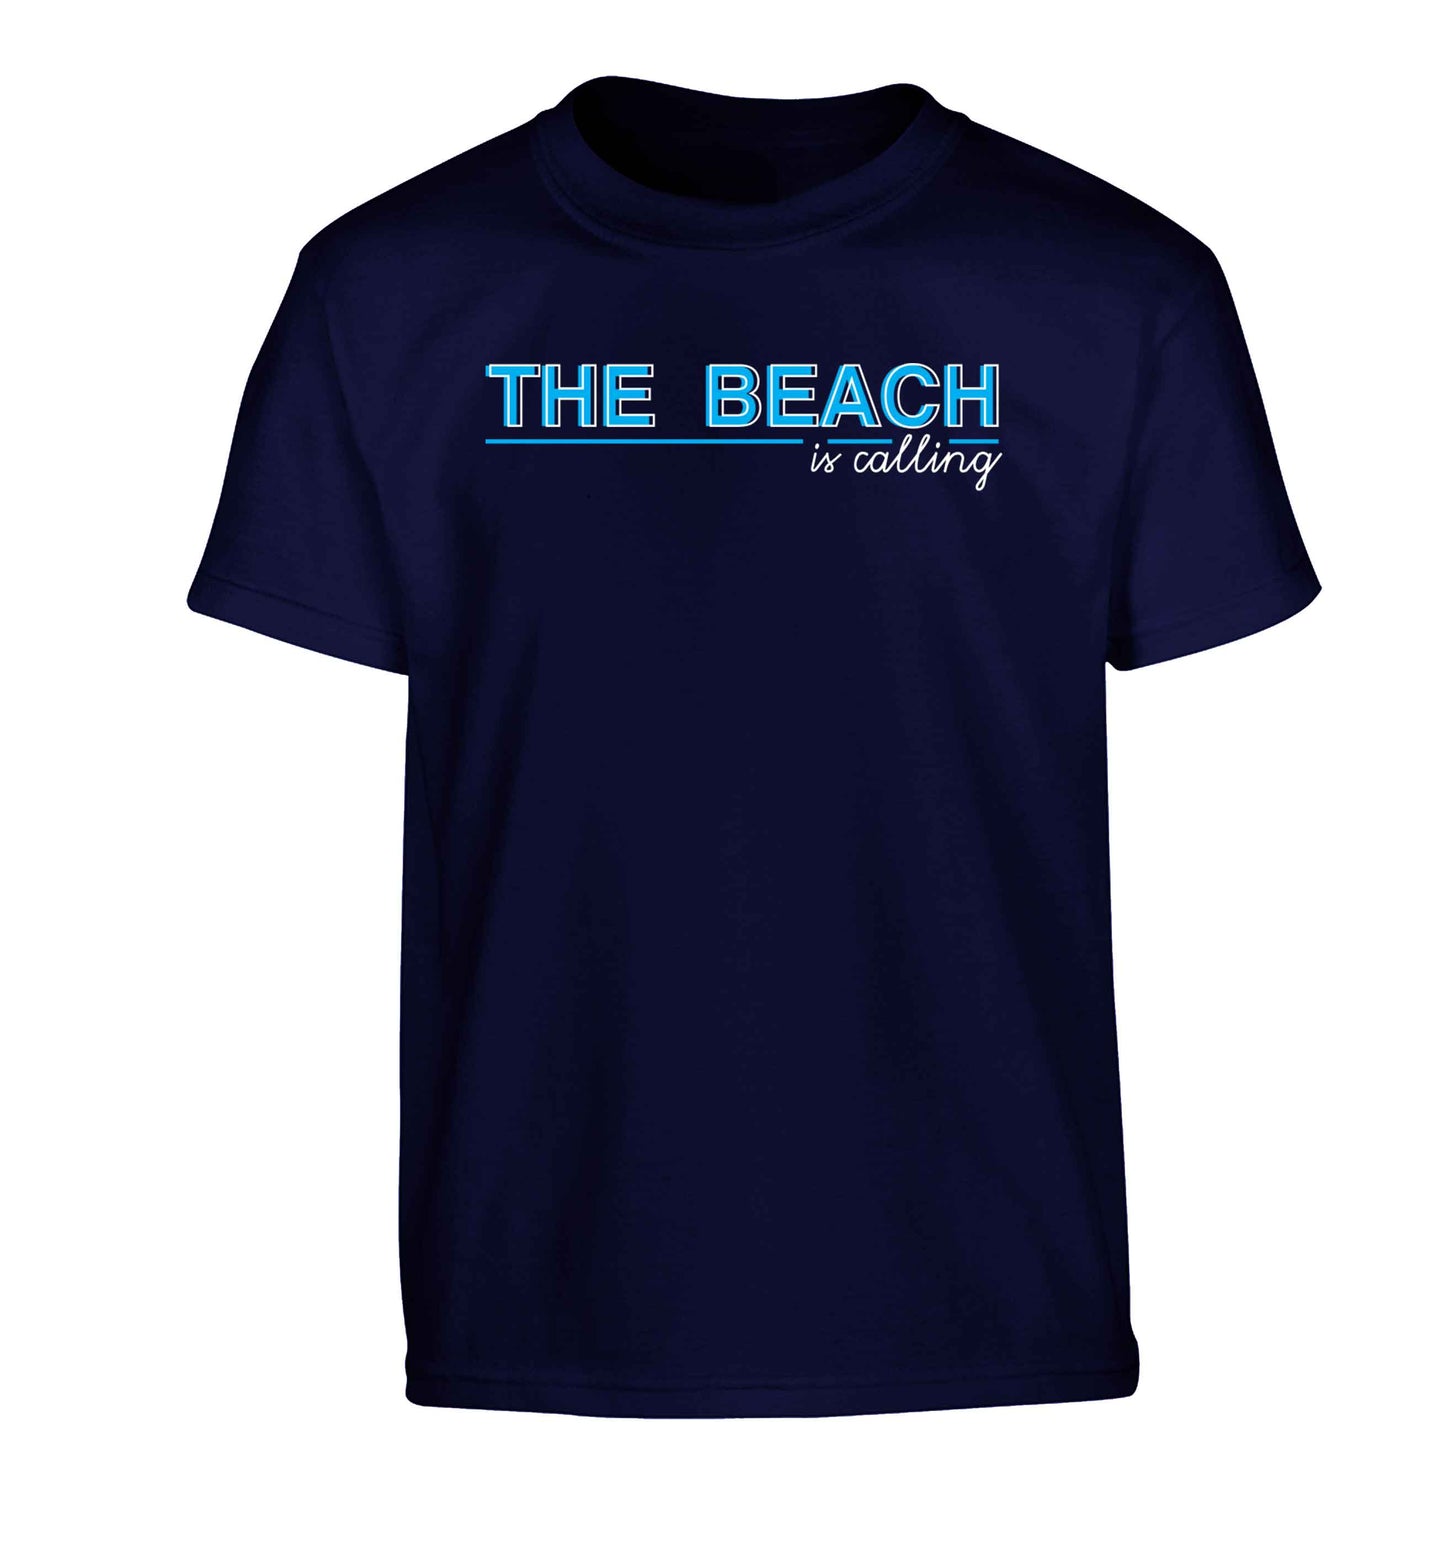 The beach is calling Children's navy Tshirt 12-13 Years